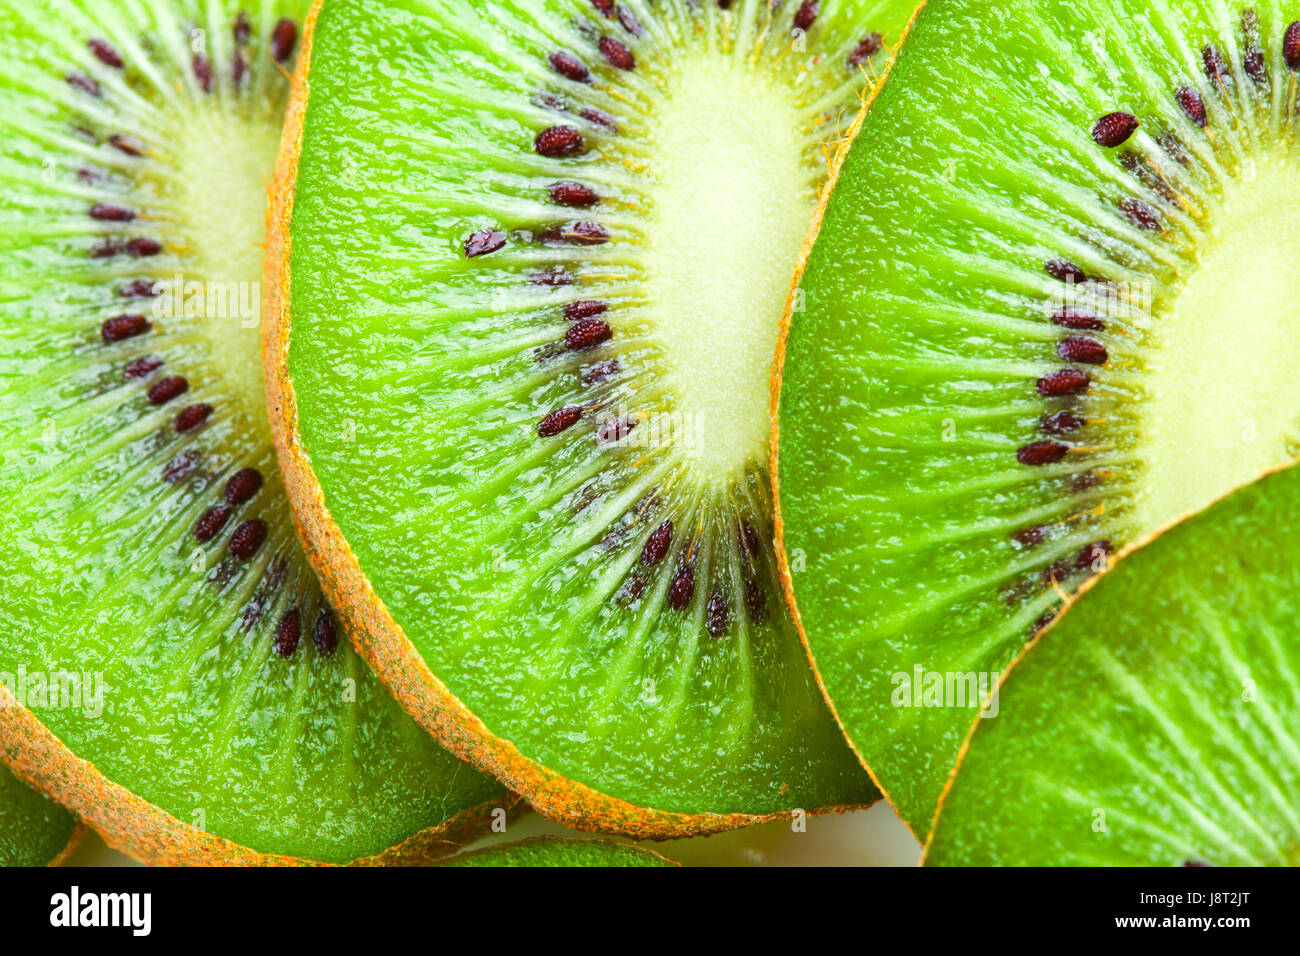 Kiwi slices as background Stock Photo